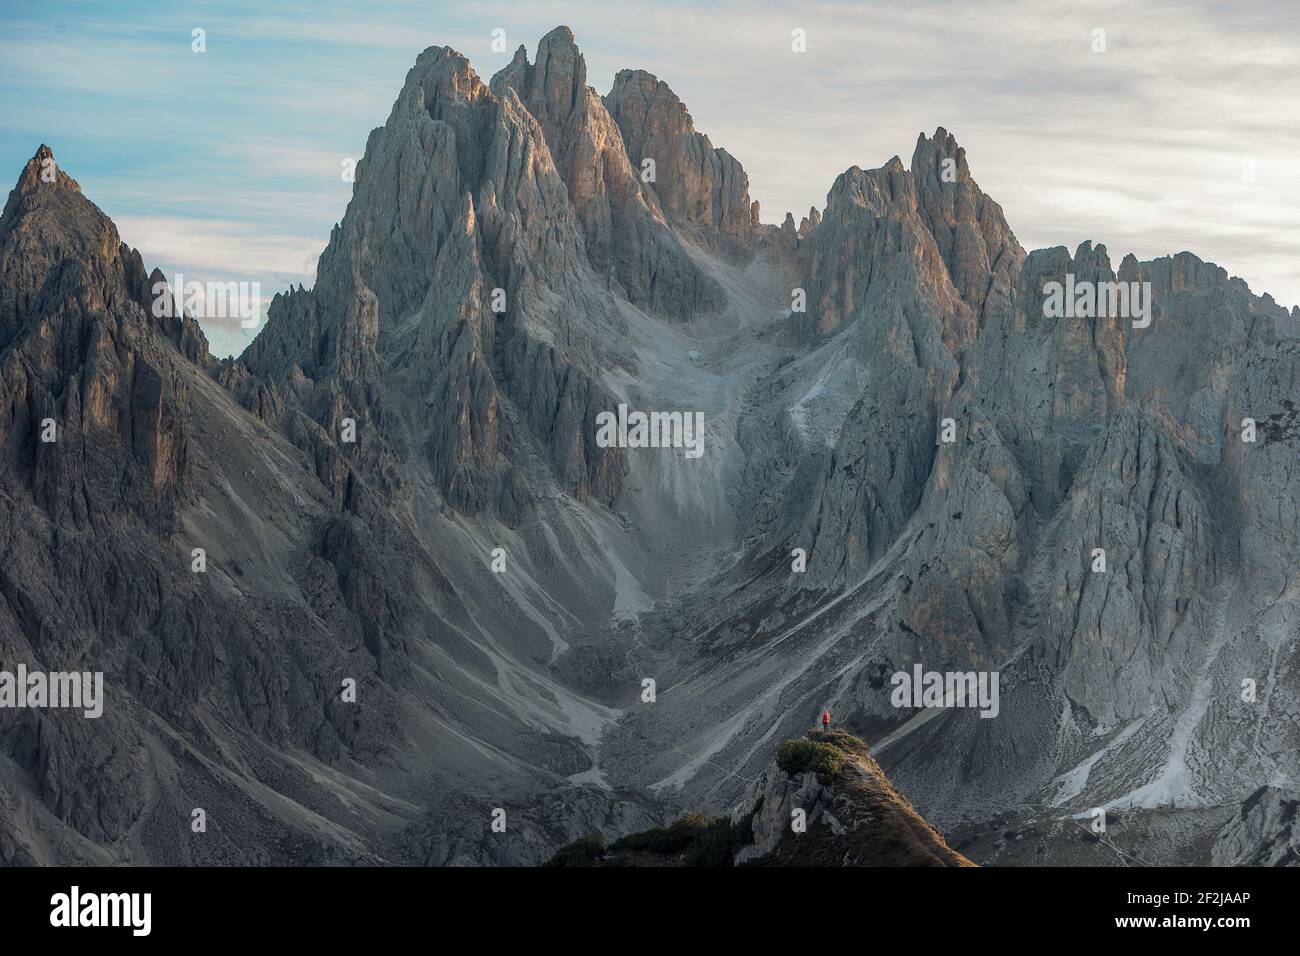 Escursionista di fronte al suggestivo paesaggio sul Monte Campedelle, Dolomiti, Italia. Foto Stock